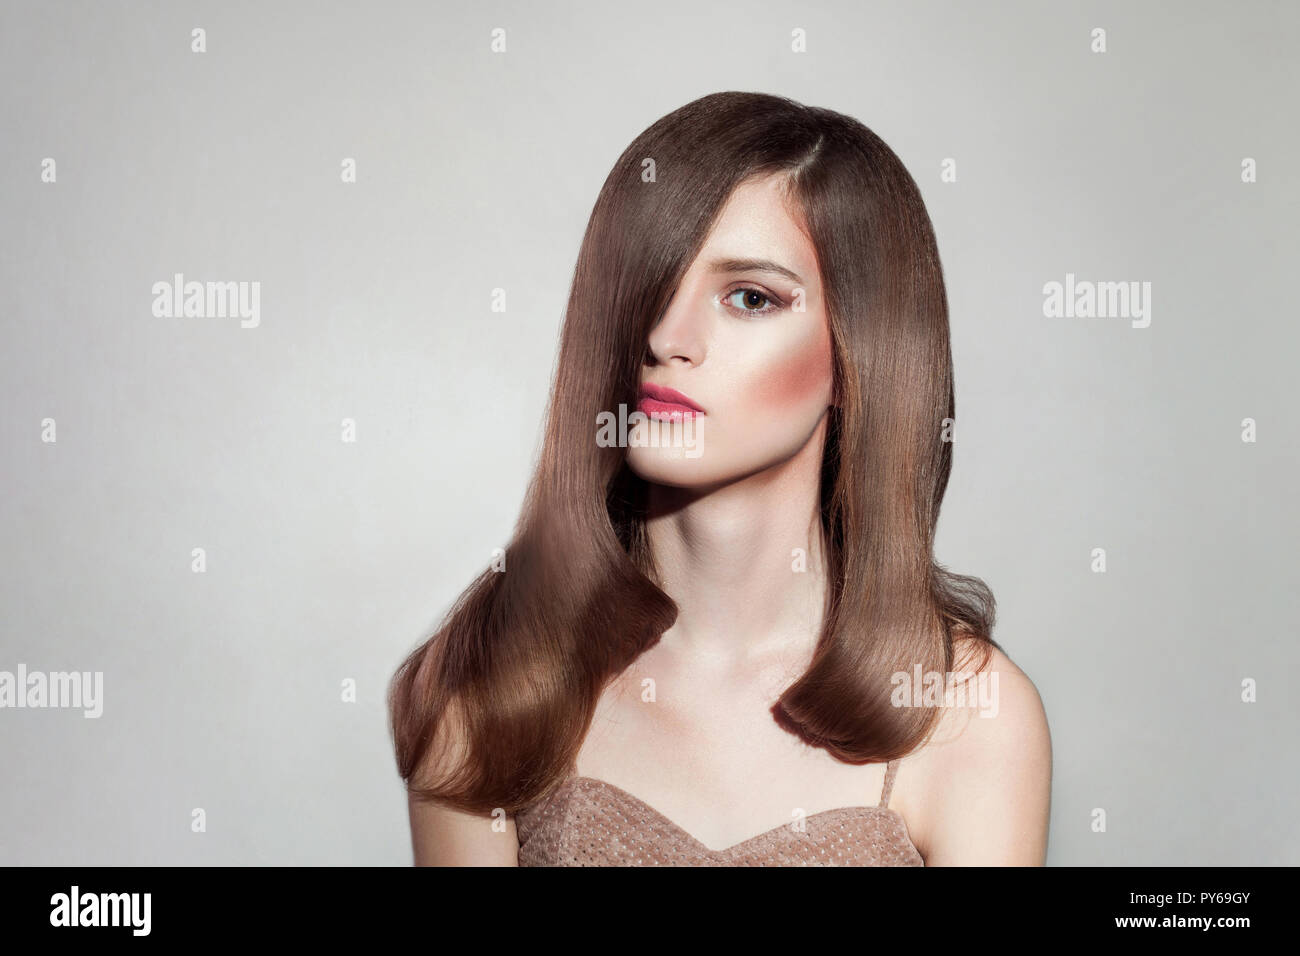 Portrait of attractive brunette woman avec maquillage lumineux et brillant tout droit de poils, posant sur fond gris isolé. piscine, studio shot on copie spa Banque D'Images